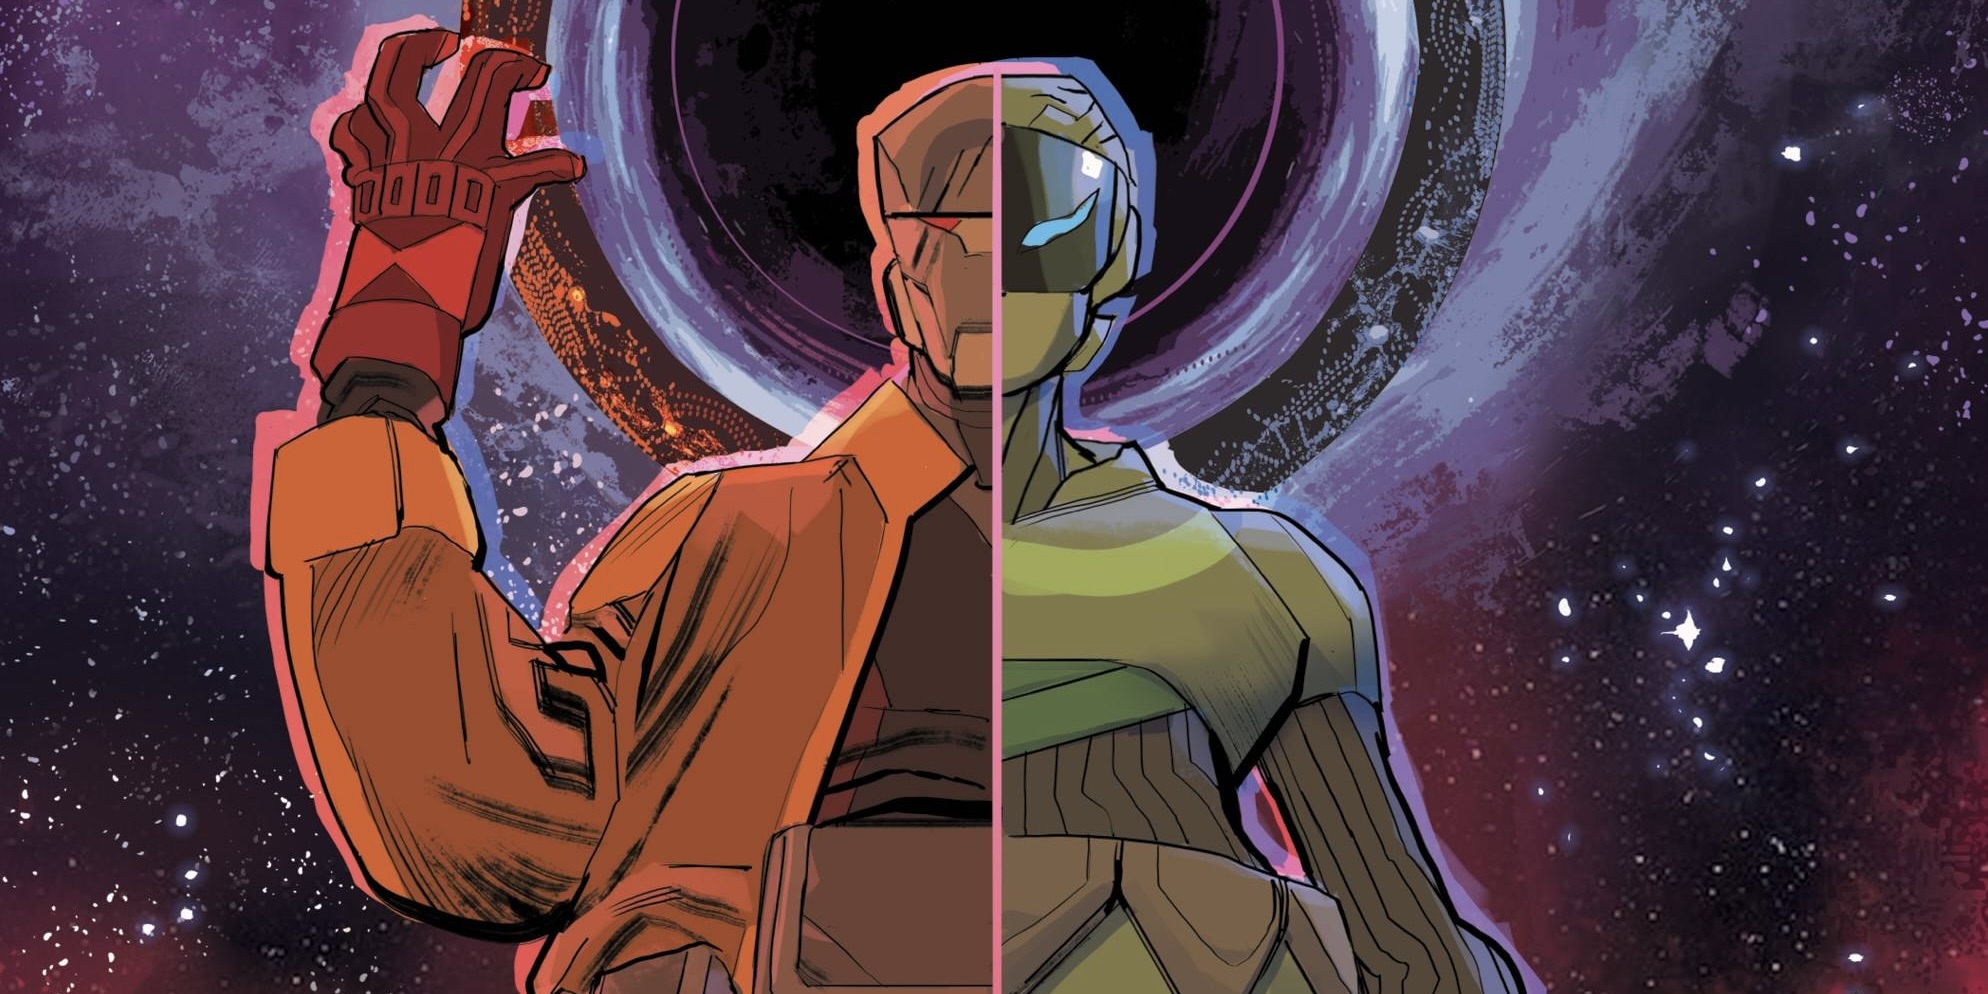 Doctor Strange” #3 – Multiversity Comics